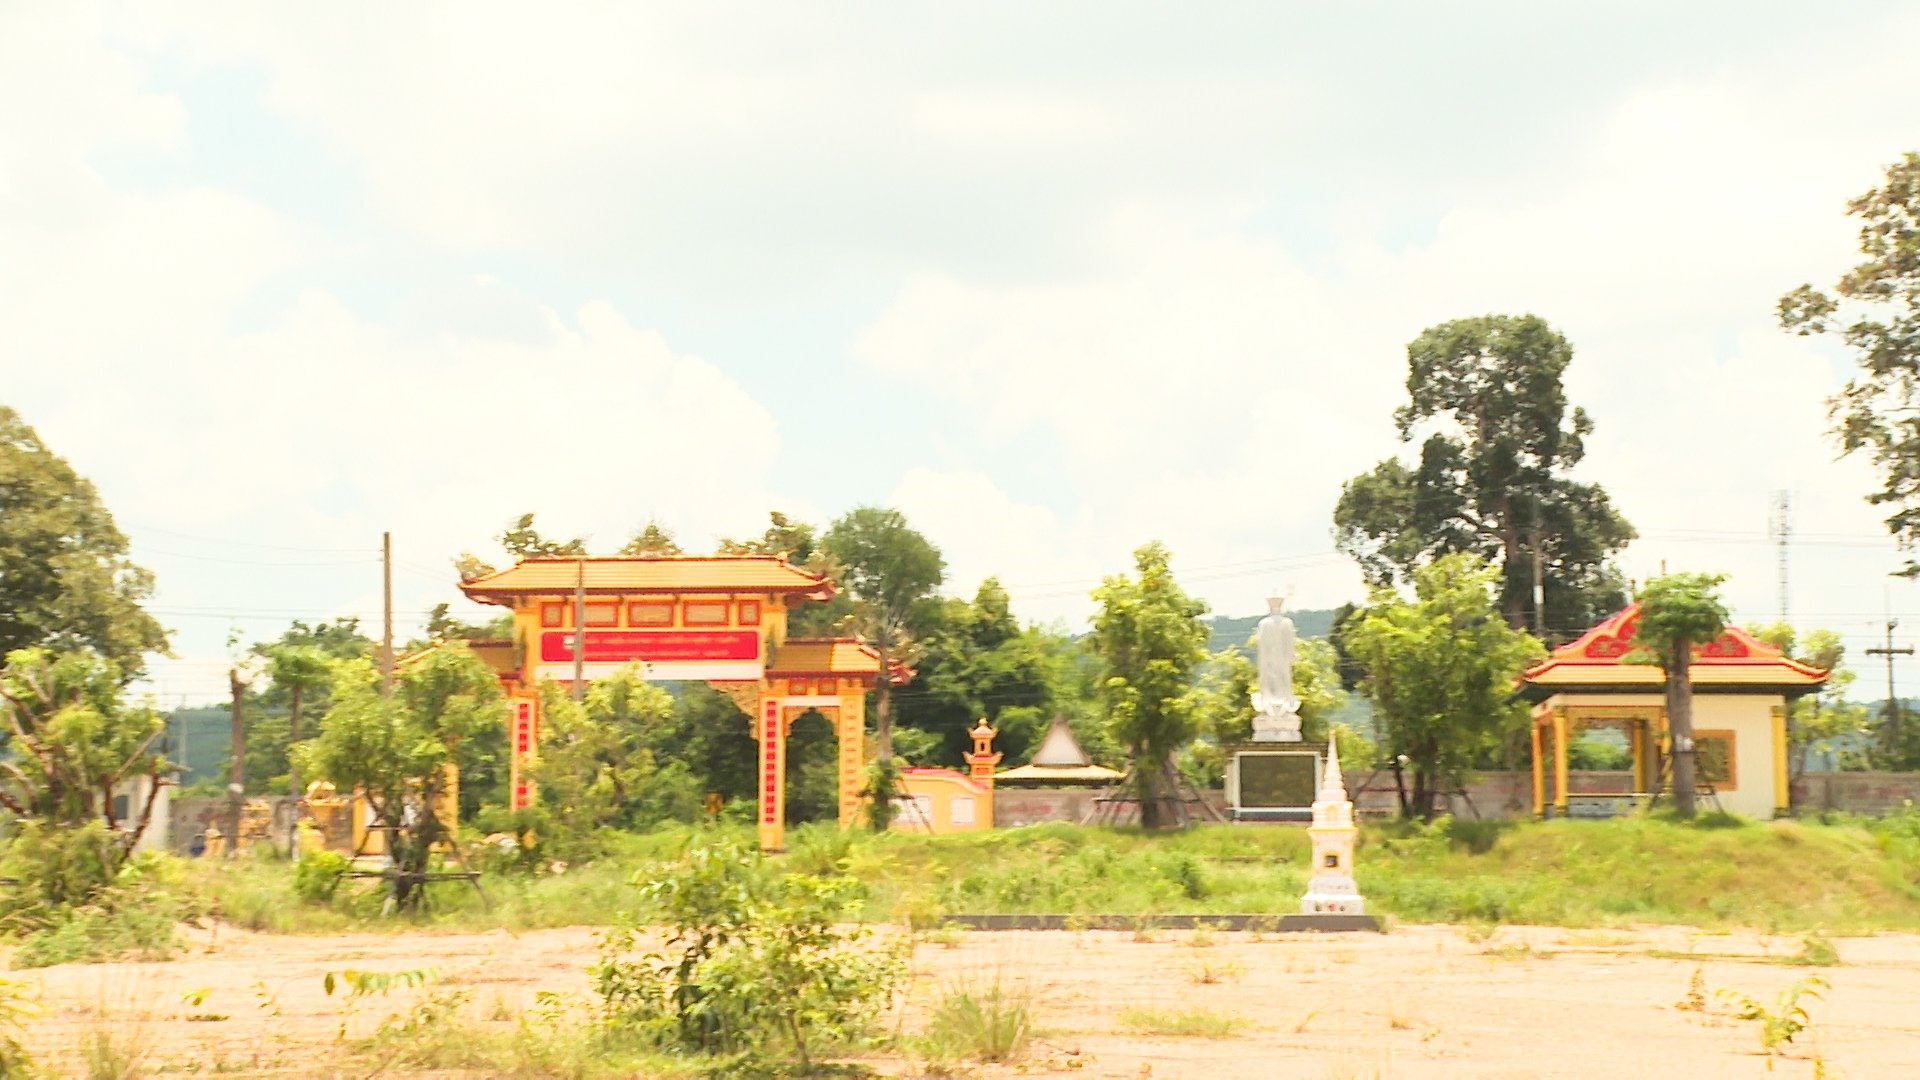 Nghĩa trang Cõi vĩnh hằng - nơi yên nghỉ của người Việt ở Mukdahan (toàn tỉnh Mukdahan chỉ có một nghĩa trang của người Việt).